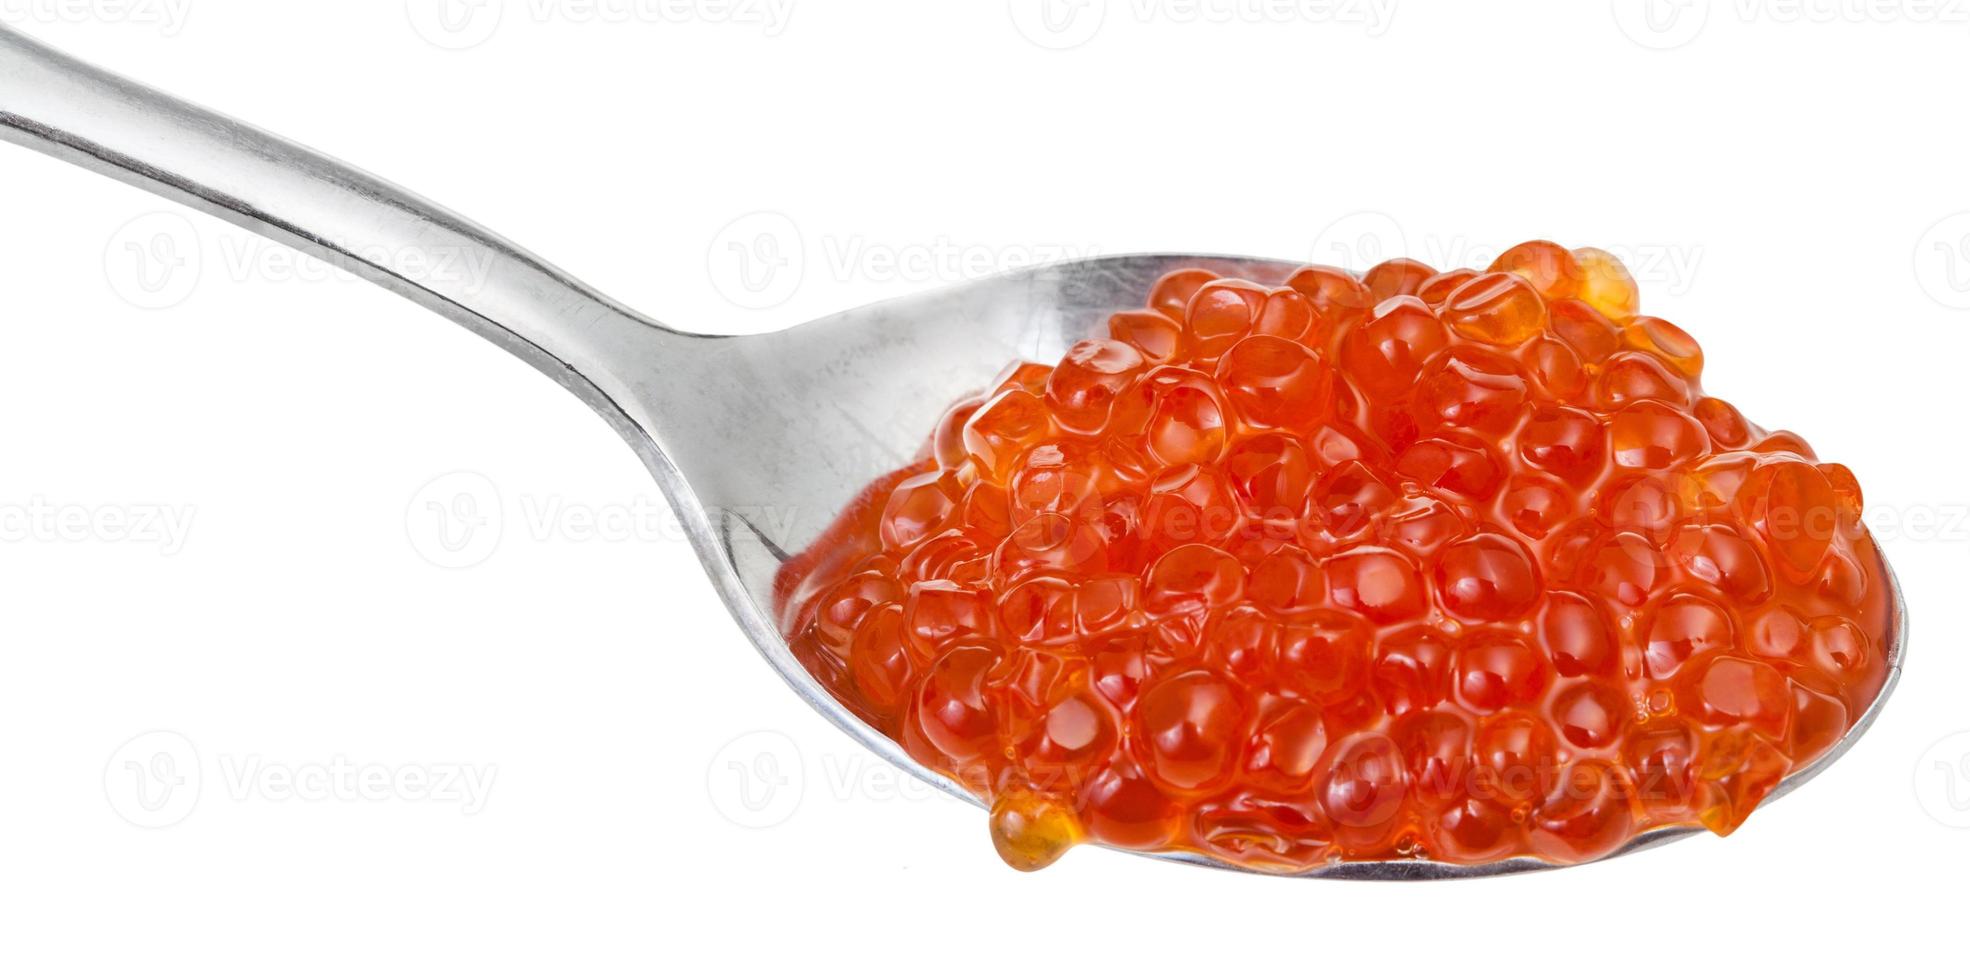 caviar rouge de poisson saumon sockeye sur cuillère photo